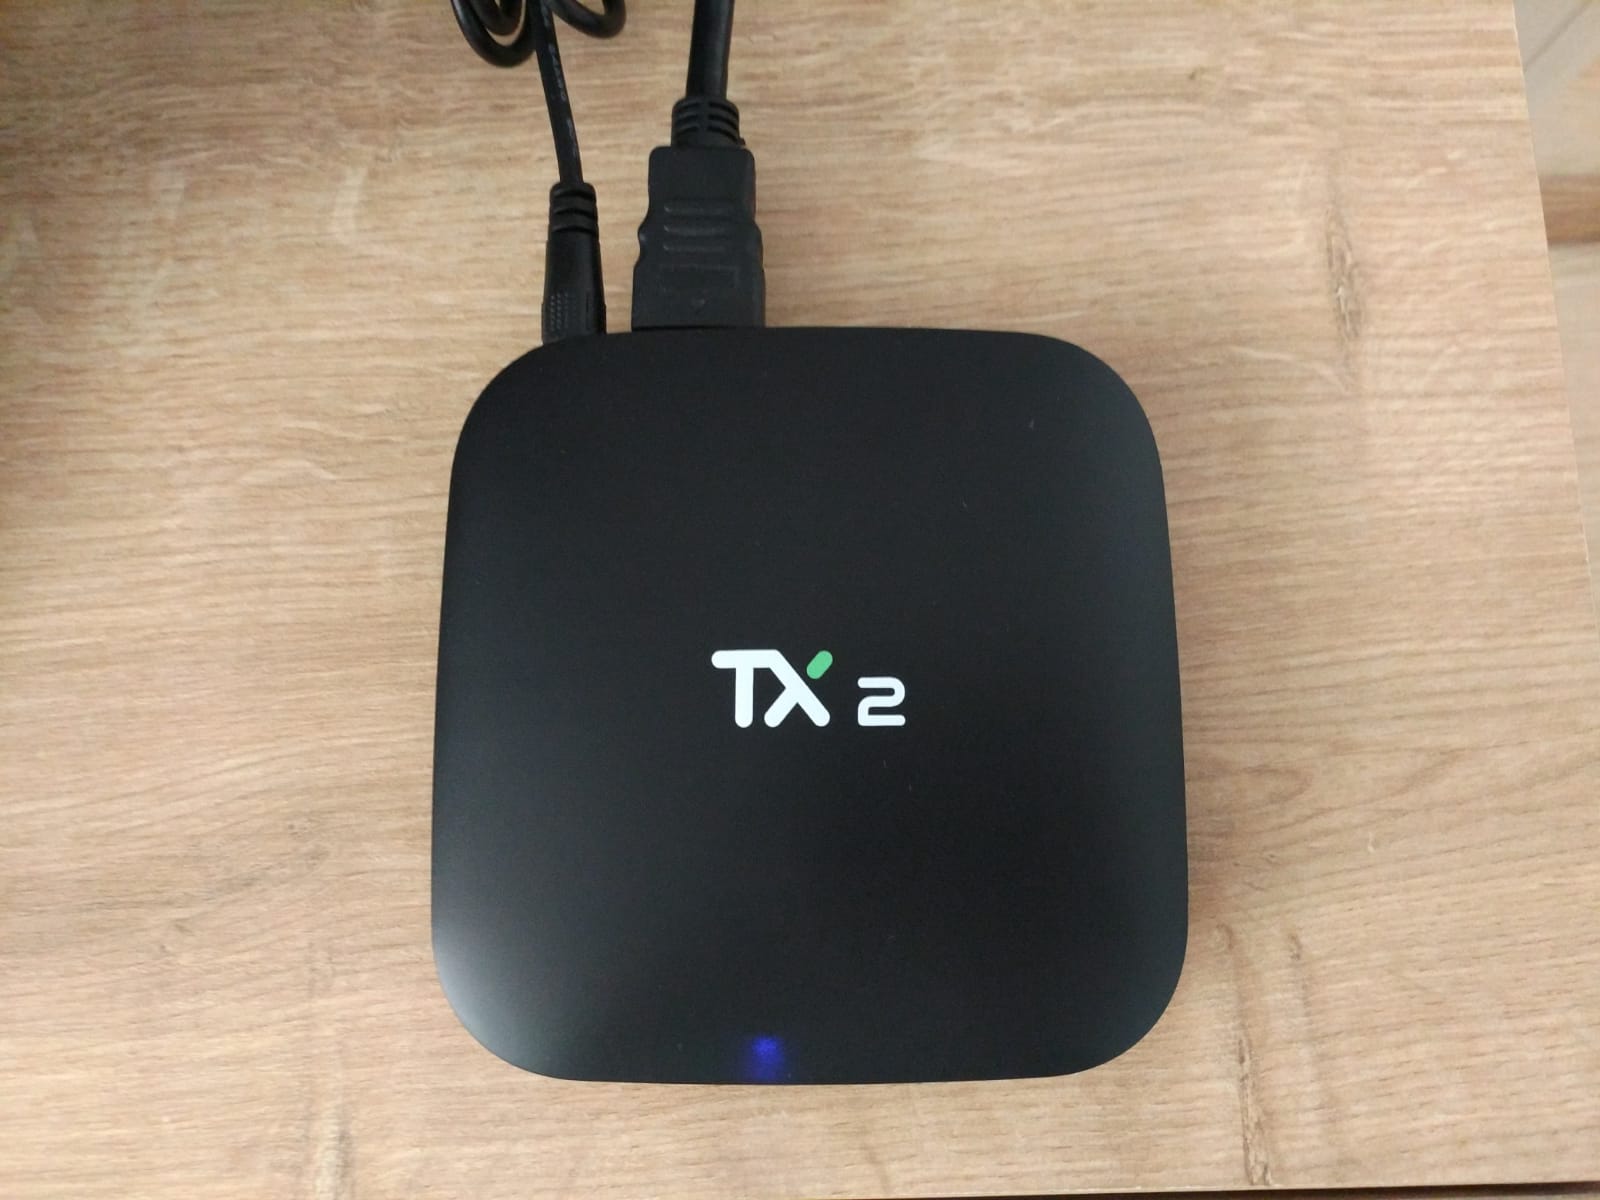 Tanix tx2 TV Box Ürün İncelemesi